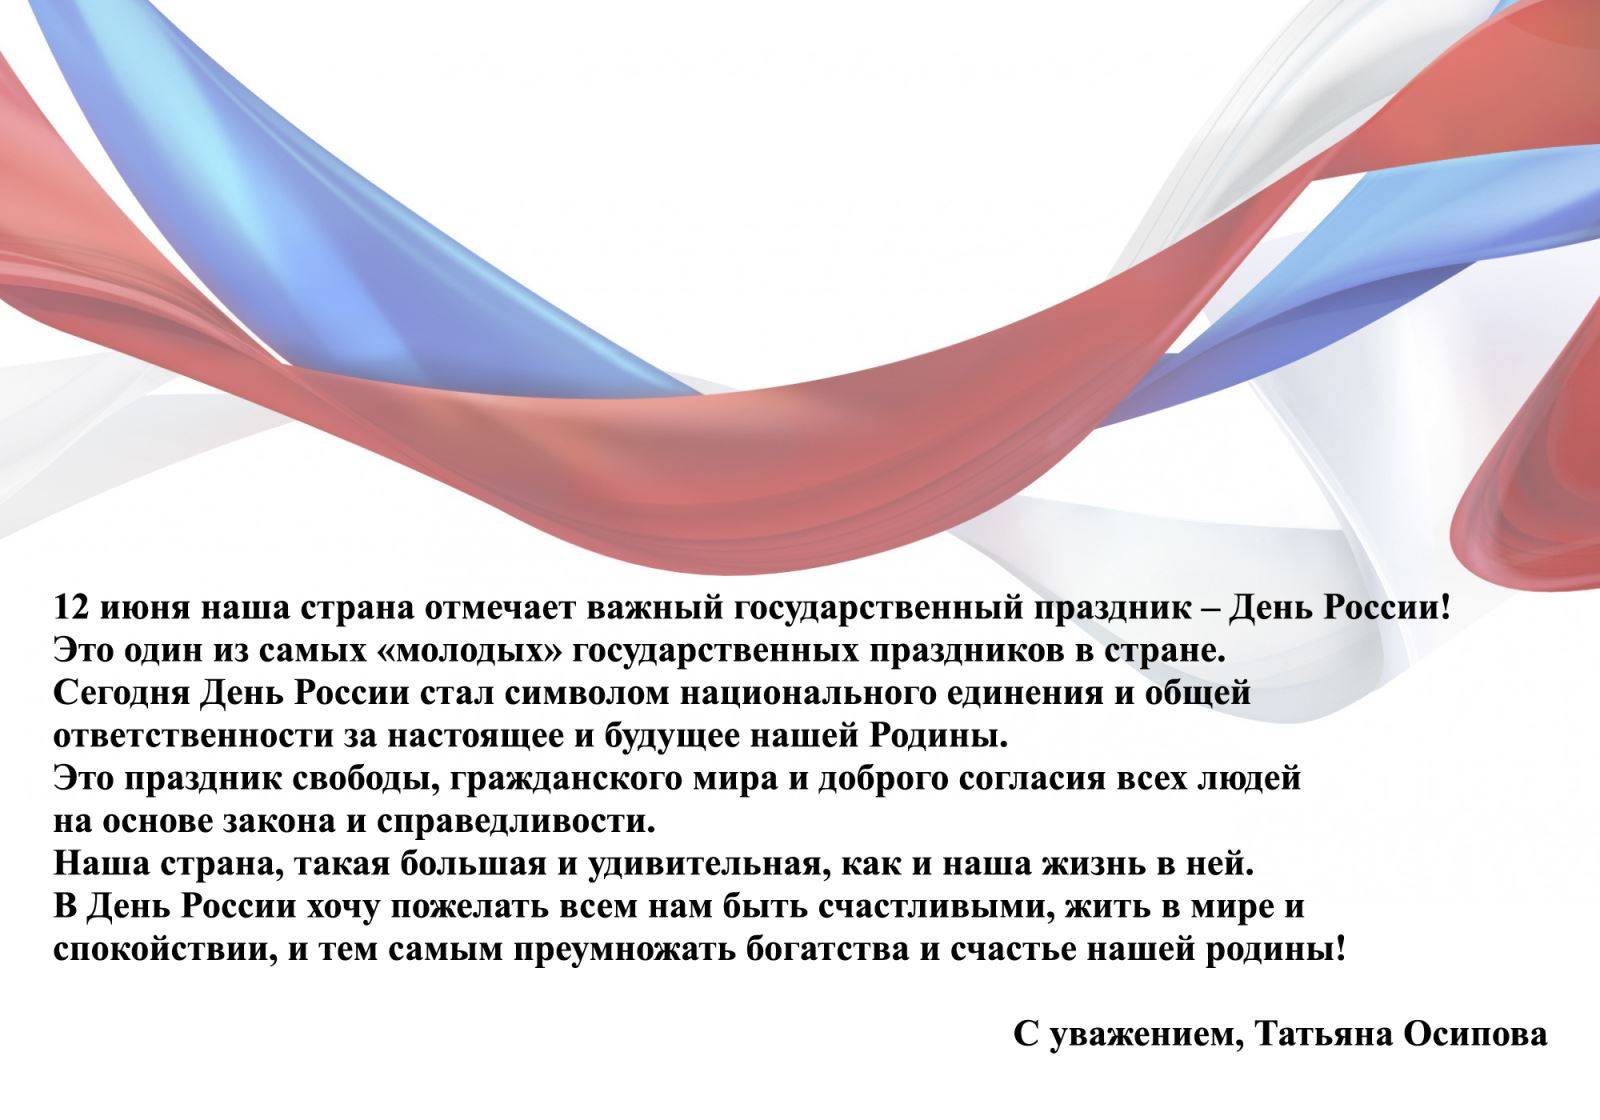 12 июня день россии, история праздника кратко